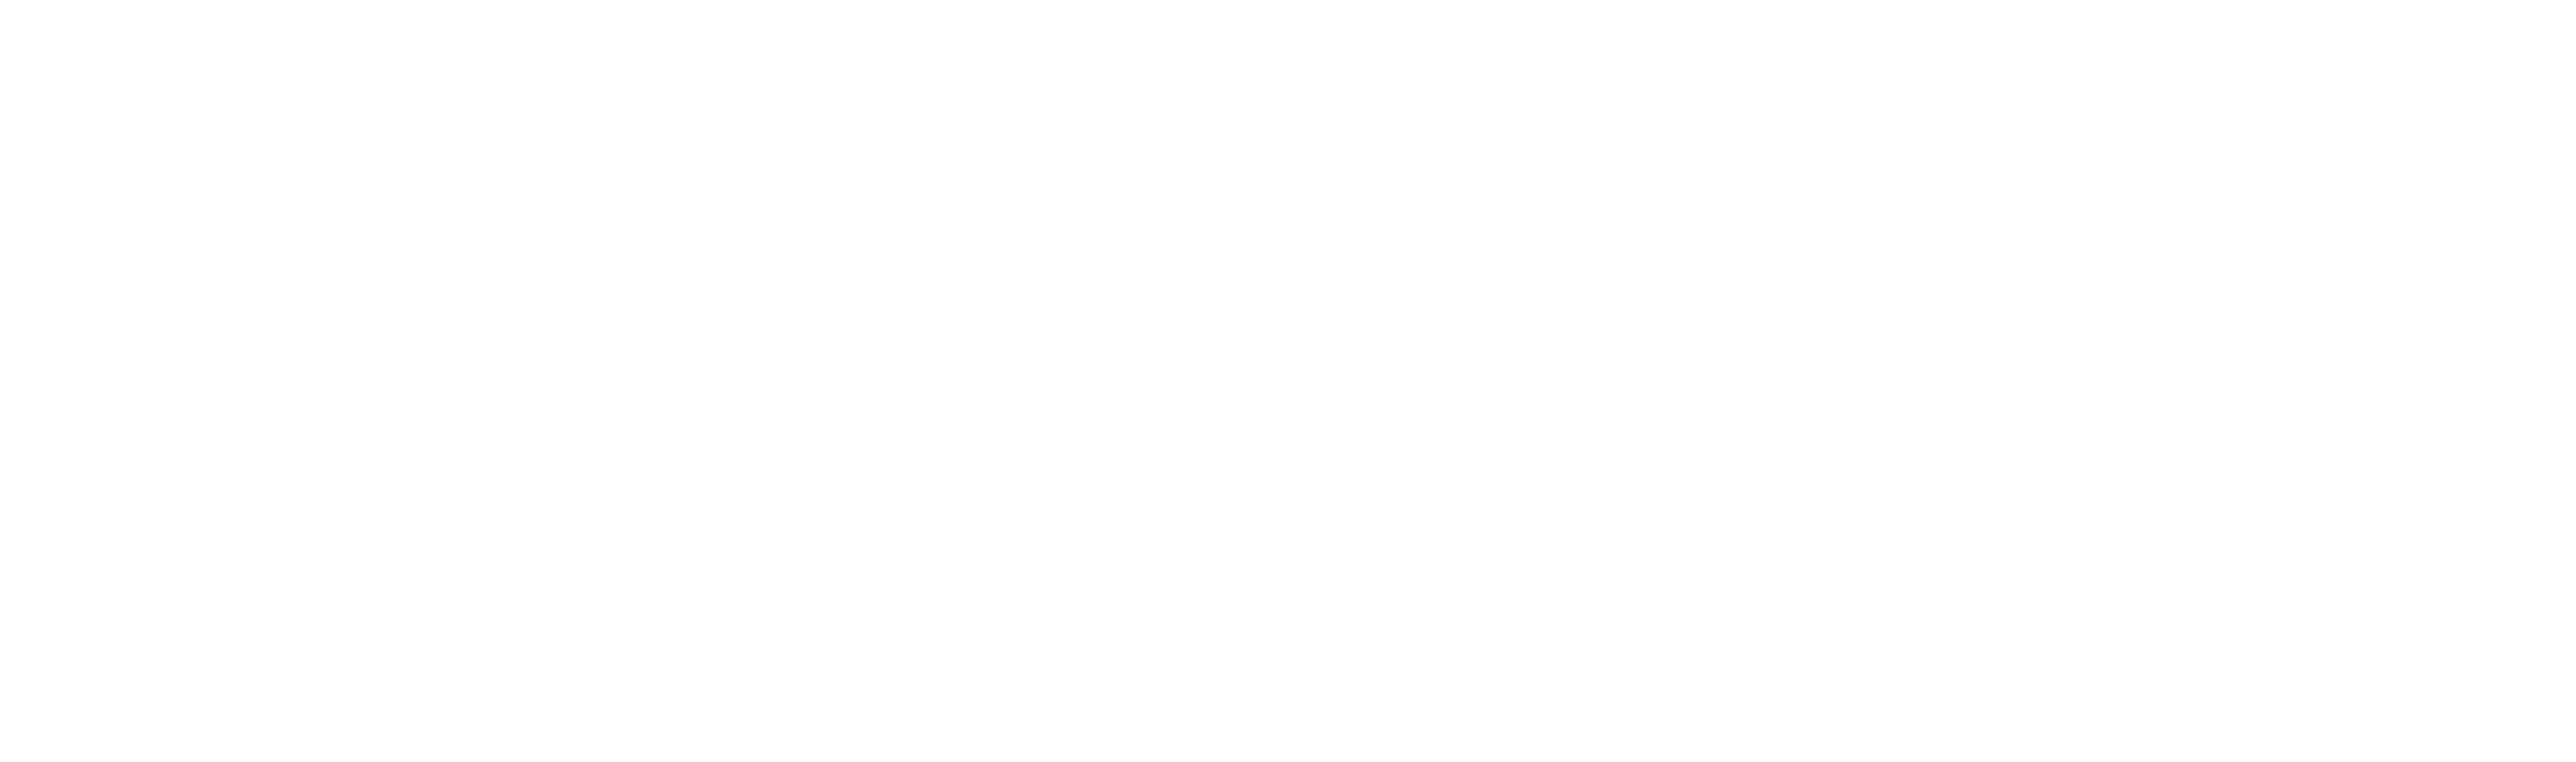 Logo Balttour 2023 - 30